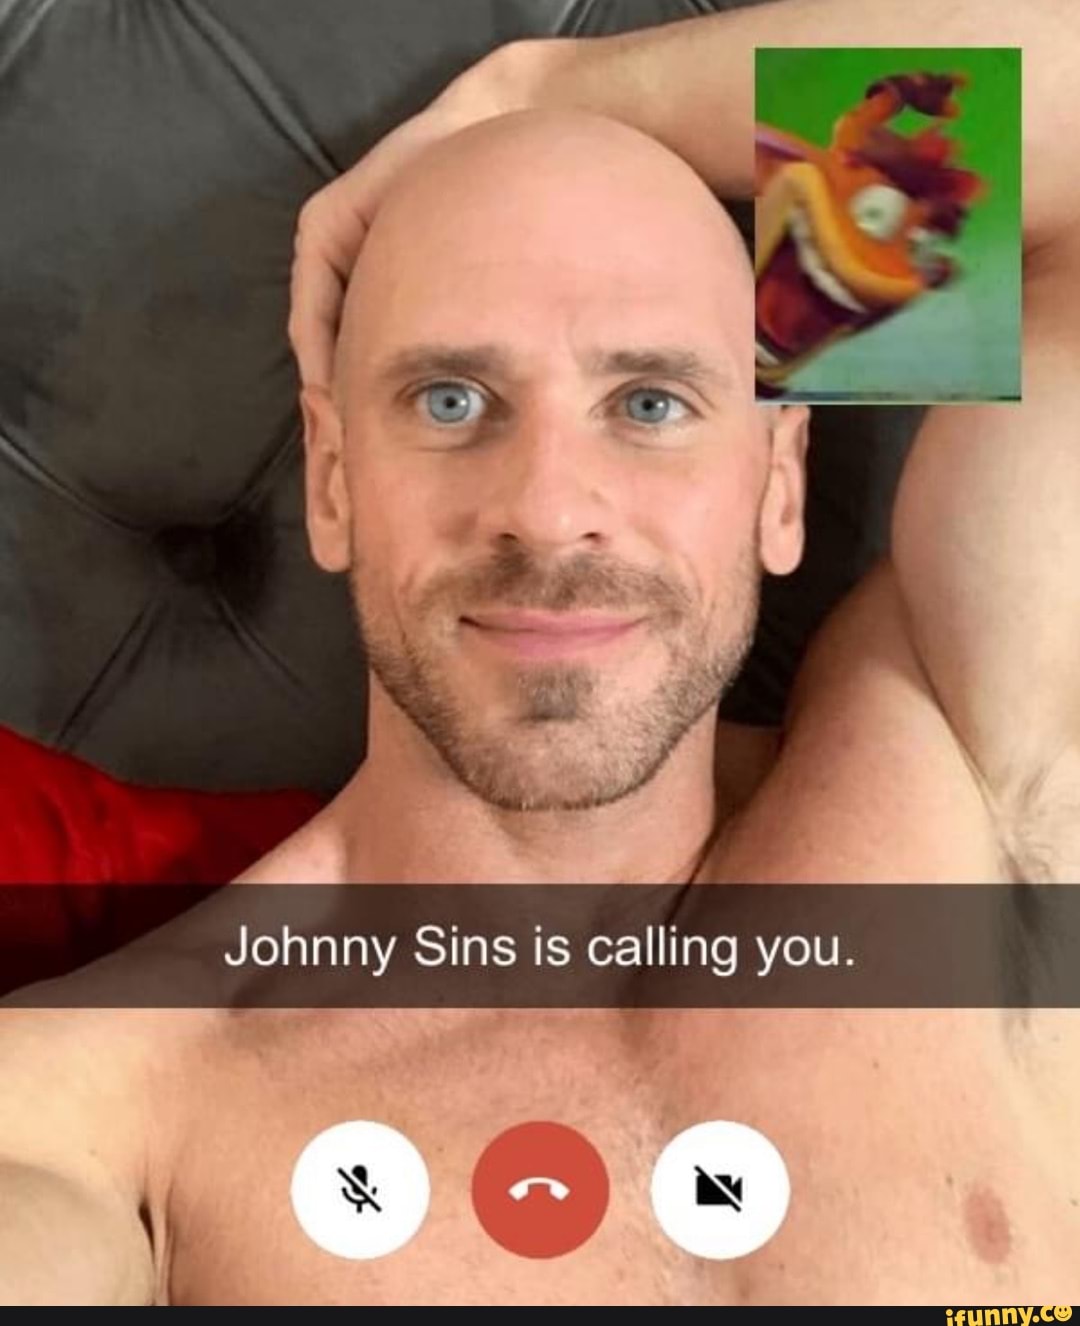 Jhonny sins